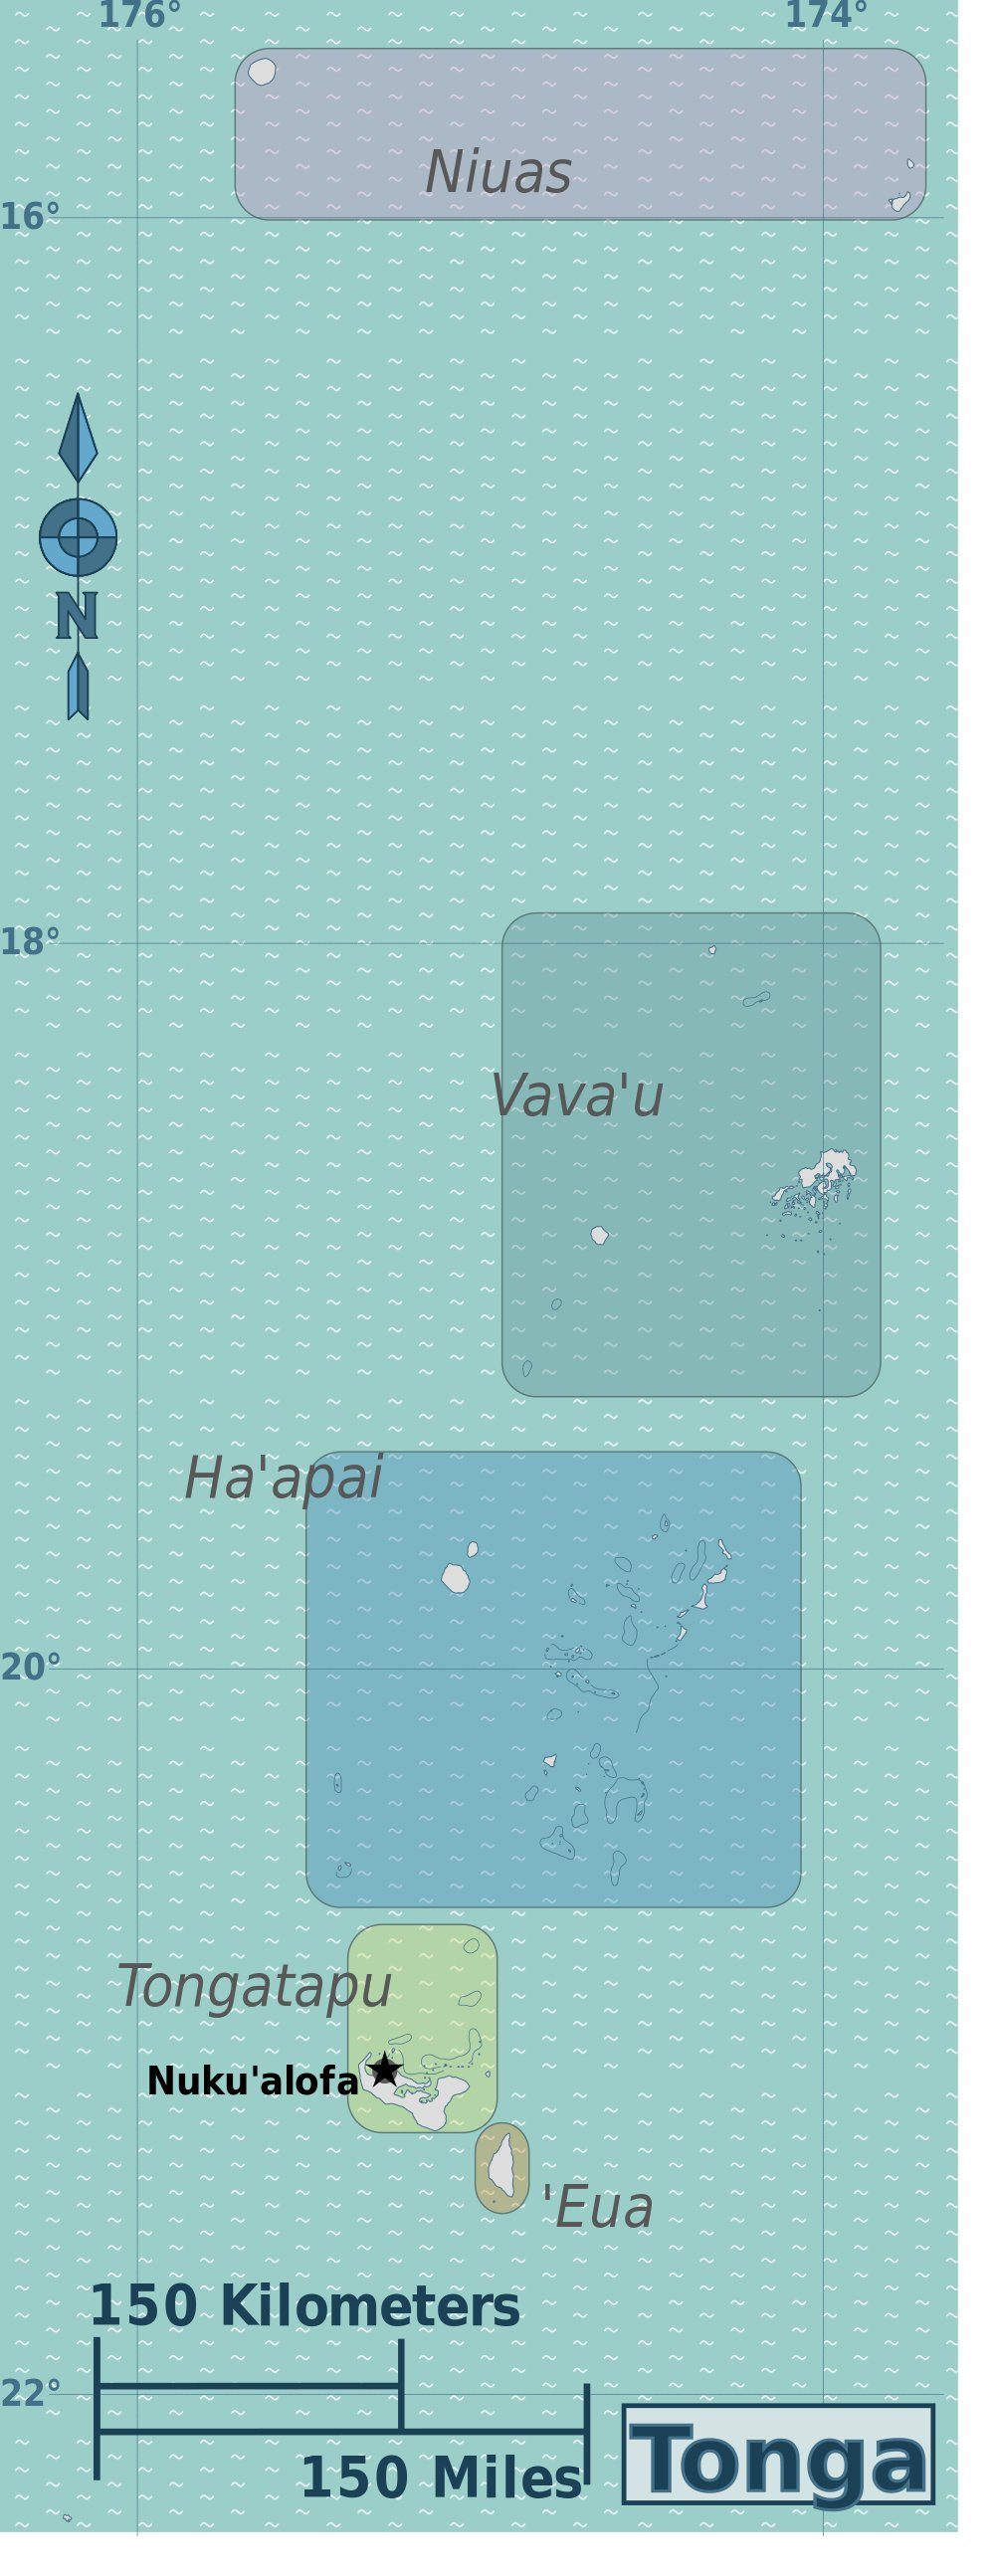 [Update] Bản đồ hành chính đất nước Tonga (Tonga Map) phóng to năm 2022 17